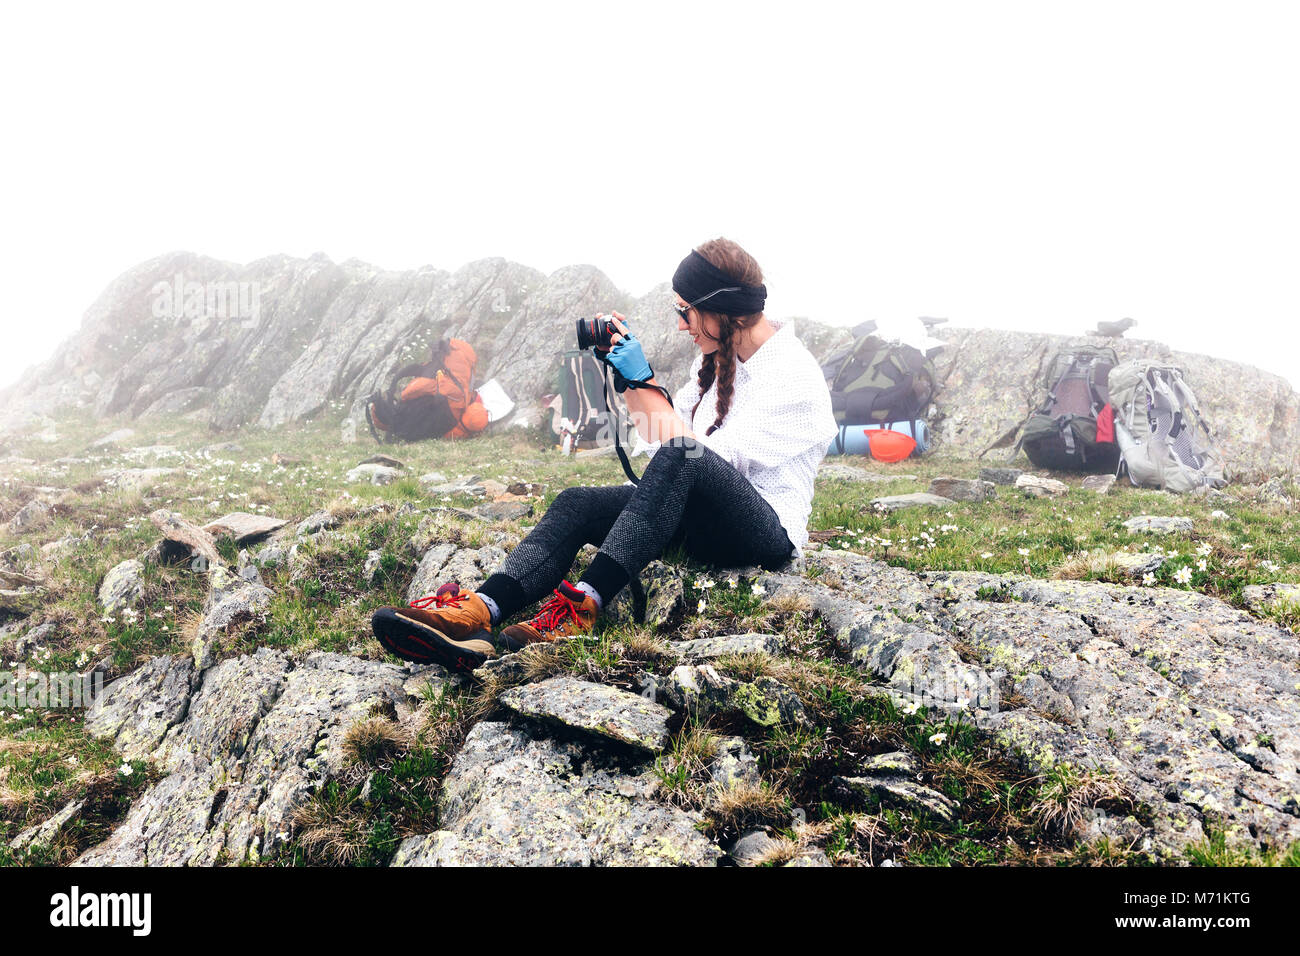 Une jeune fille se rend dans les montagnes pour prendre des photos avec un appareil photo, sac à dos de camping arrière-plan. Le concept de l'aventure, style de randonnées. Banque D'Images